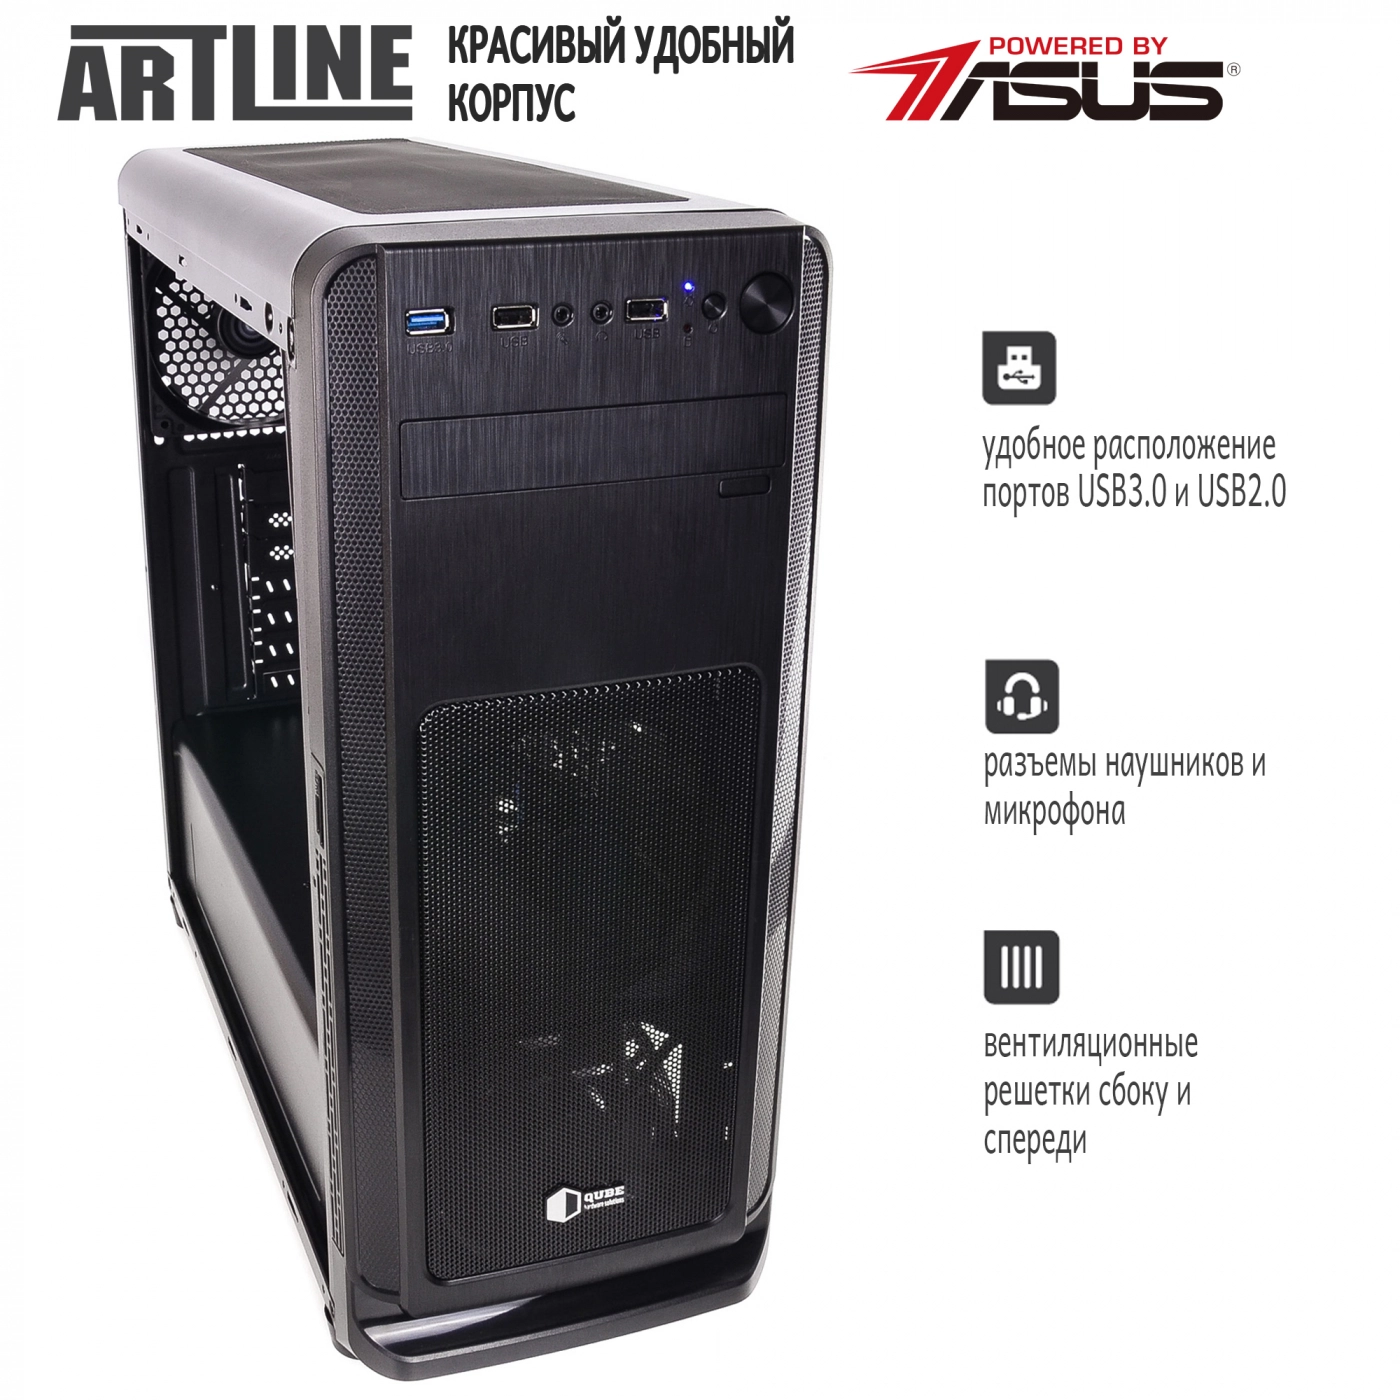 Купить Сервер ARTLINE Business T65v03 - фото 5